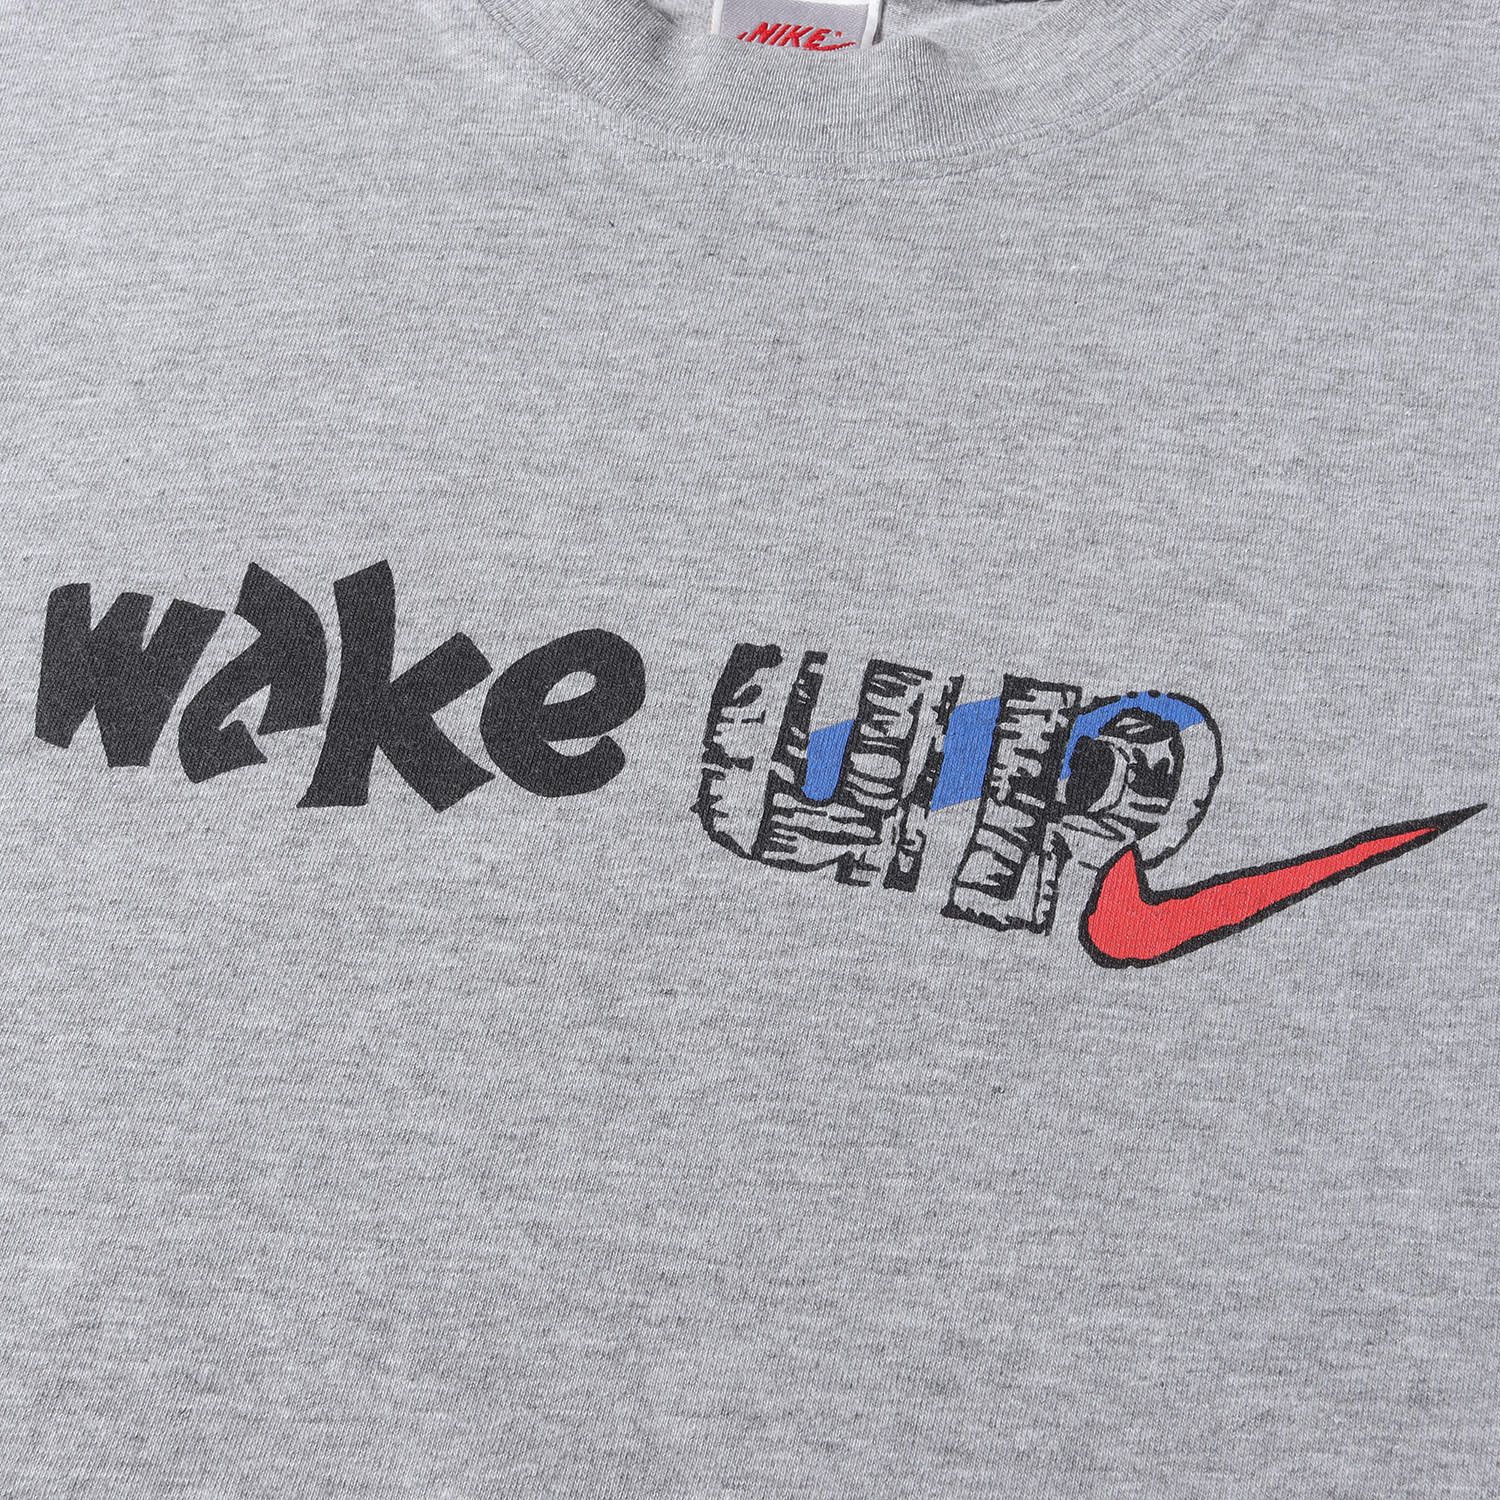 NIKE vintage ナイキ ヴィンテージ Tシャツ サイズ:L 90s WAKE UP ロゴ クルーネック 半袖 Tシャツ 90年代 グレータグ グレー トップス カットソー アメカジ スポーツ  【メンズ】